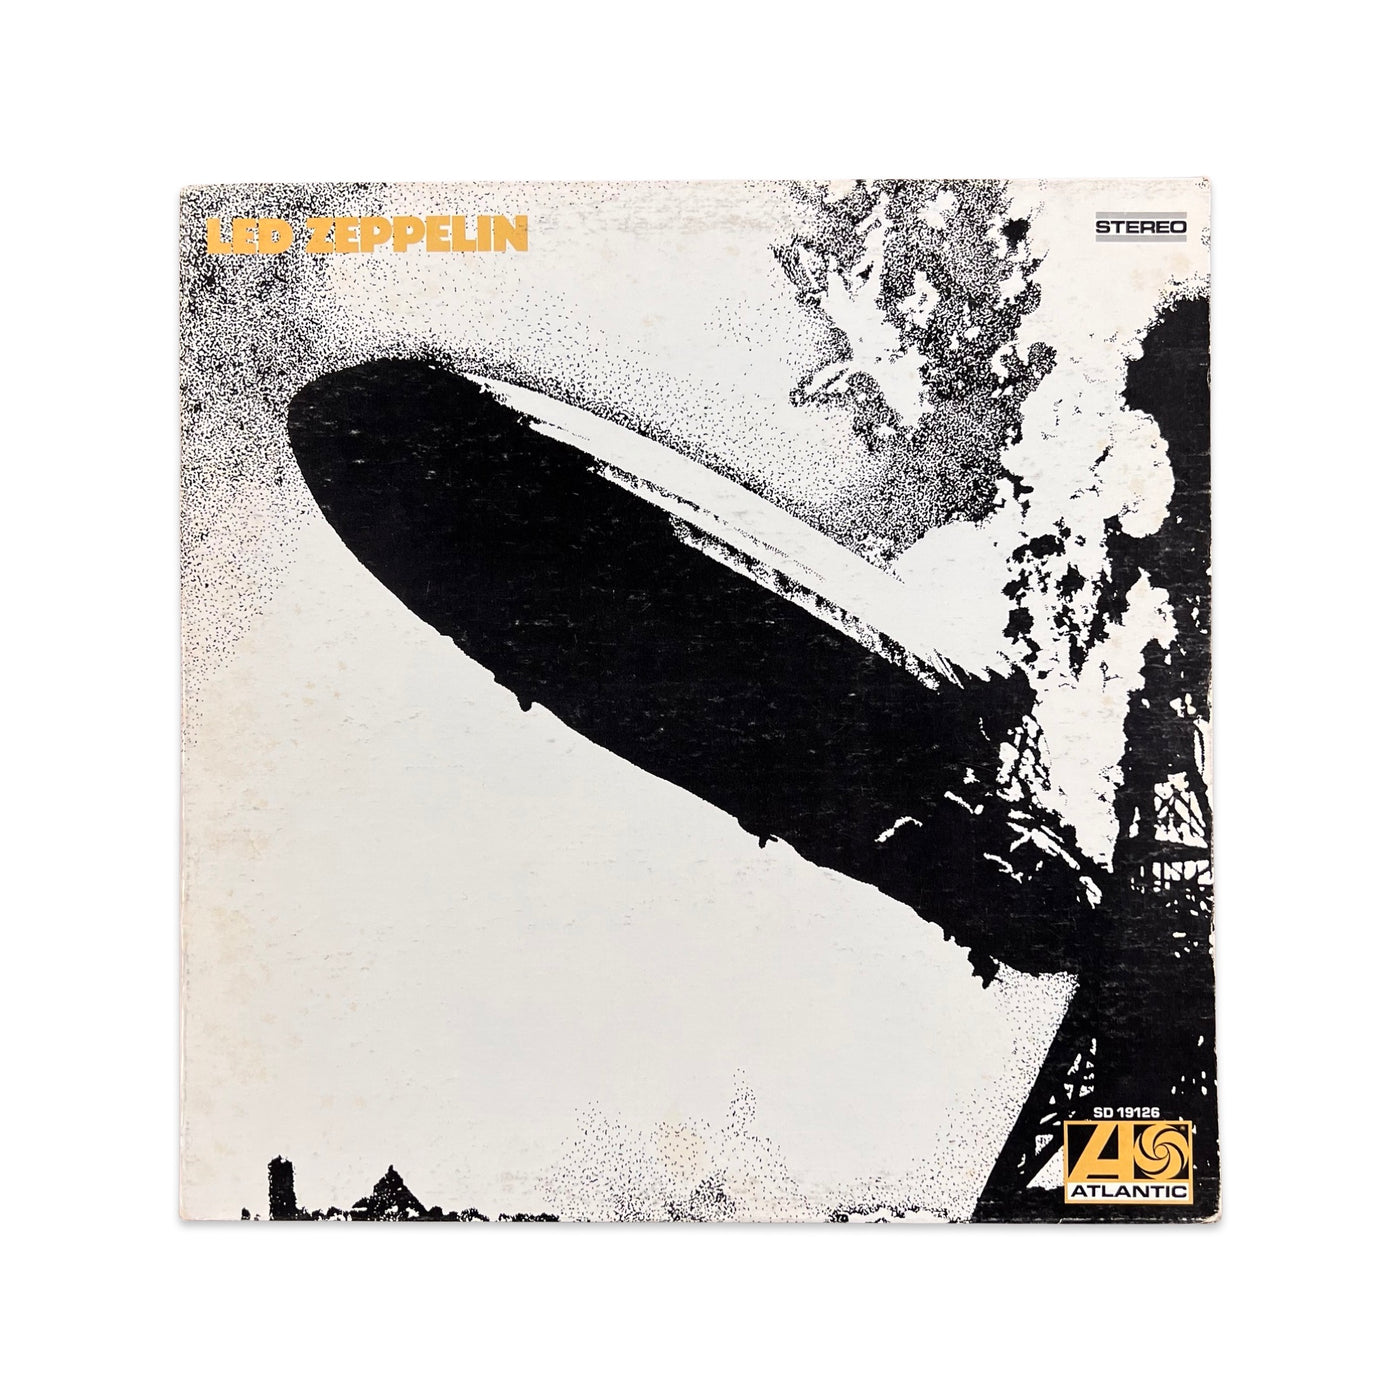 Led Zeppelin - Led Zeppelin - 1977 Reissue, Presswell Pressing